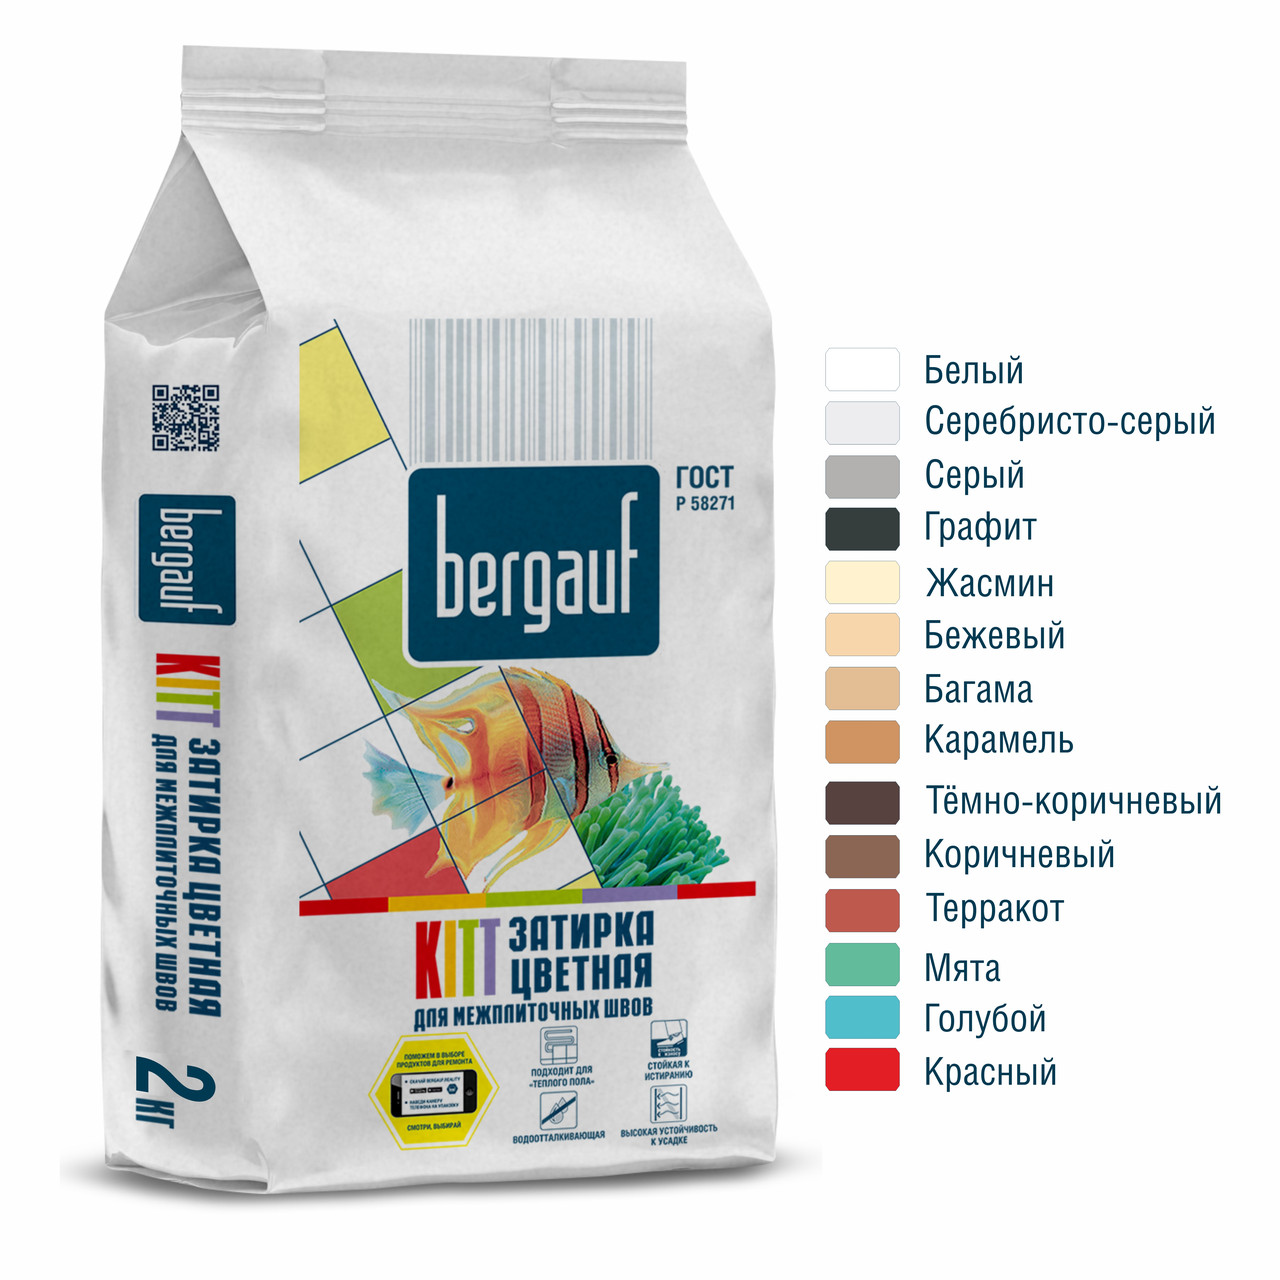 Цветная затирка для межплиточных швов KITT Bergauf 2 кг